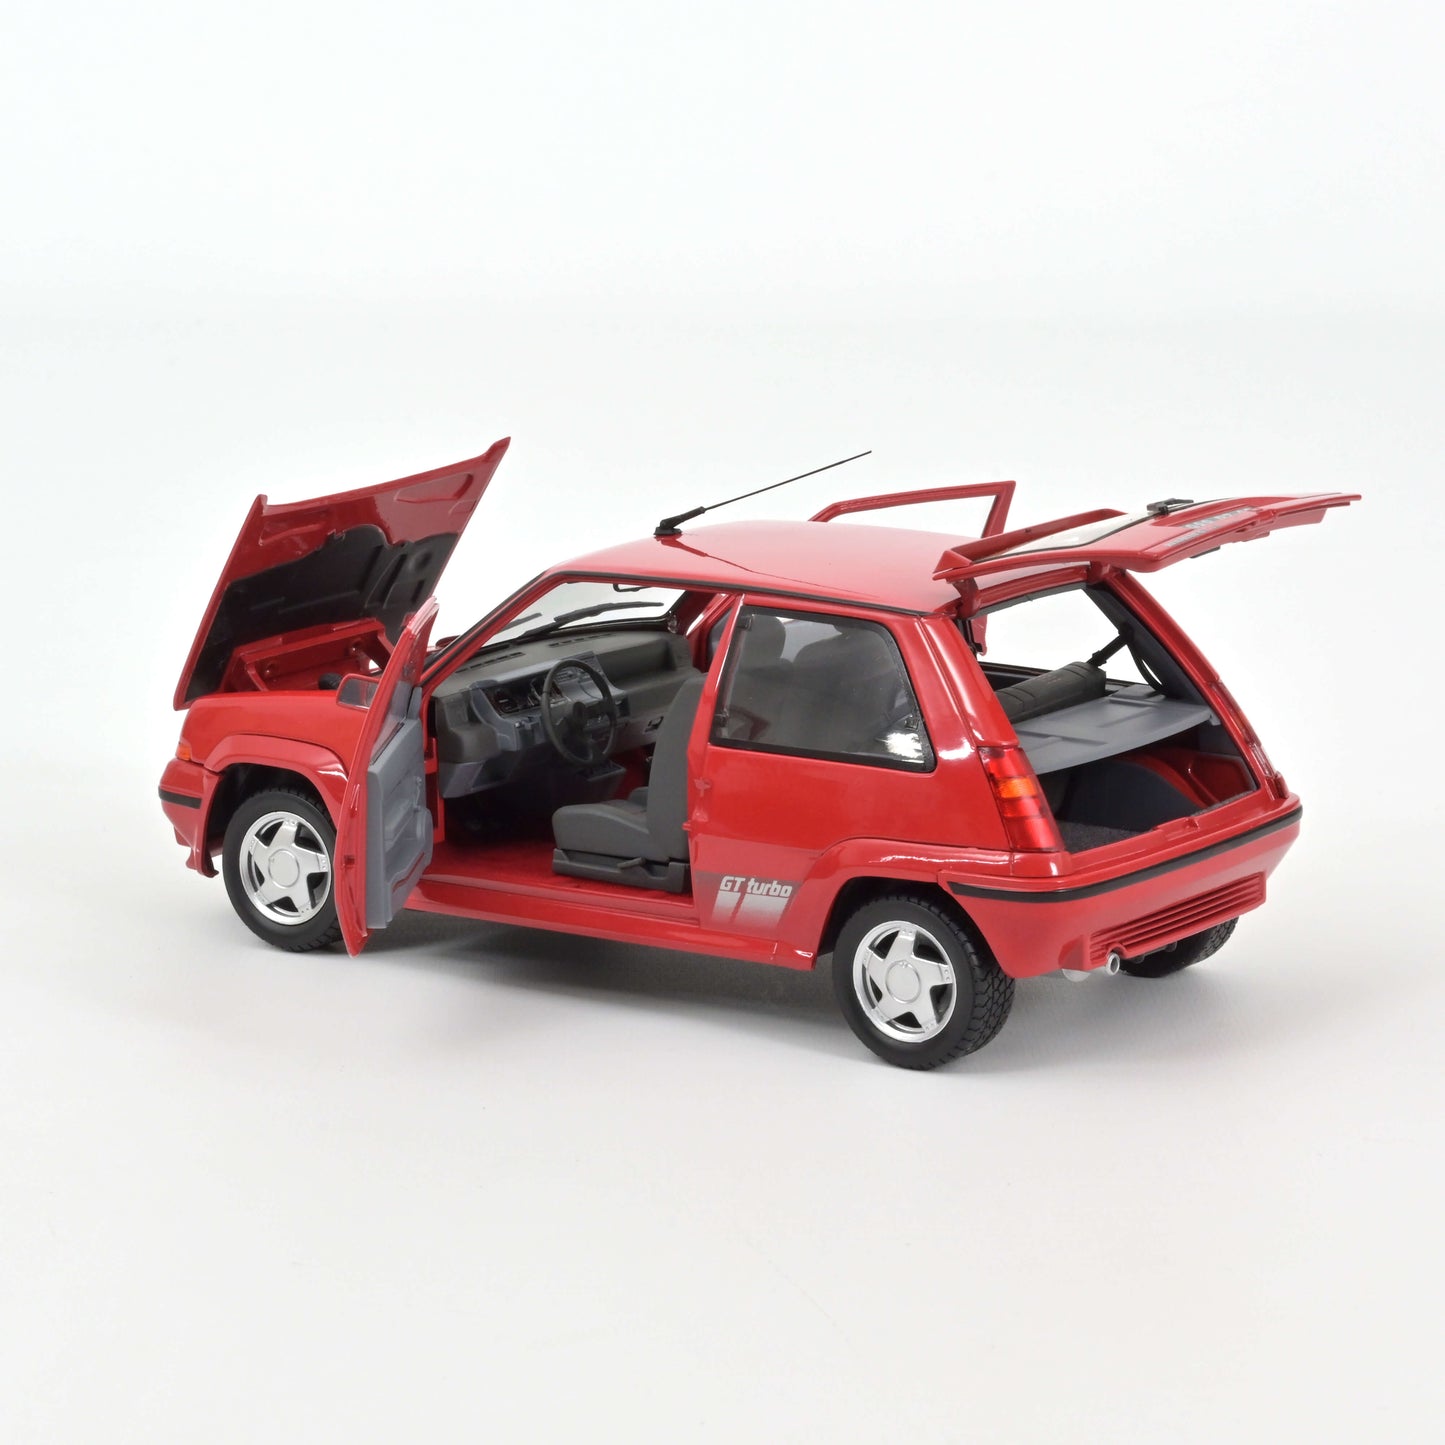 1:18 Renault R5 Supercinque GT Turbo, 1989, rød, Norev 185216-2, åben model